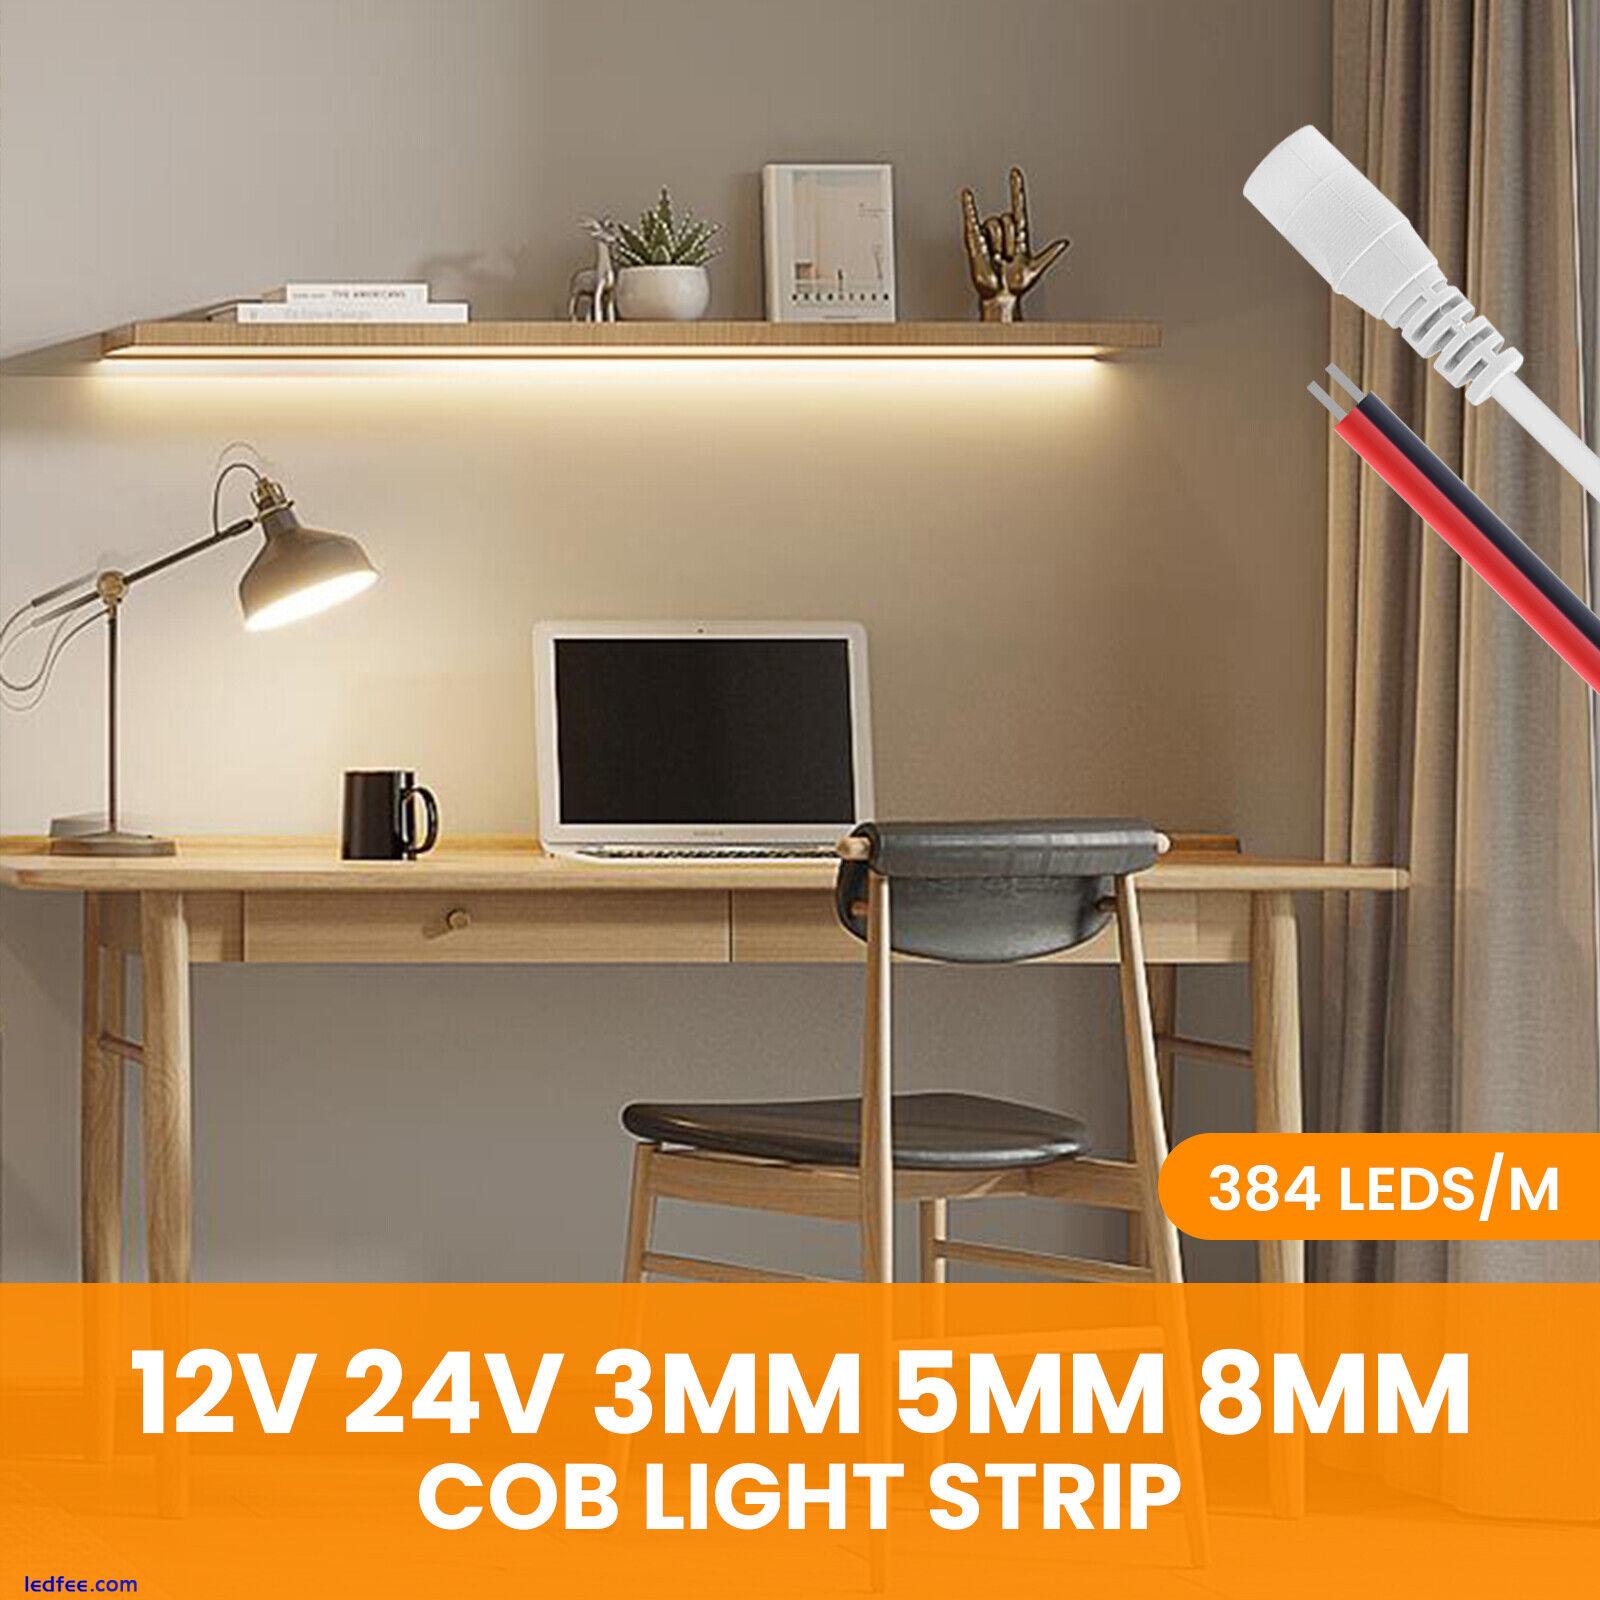 COB LED Strip Light Flexible Tape Lights 12V 24V 384LED/m Cabinet Lighting White 1 